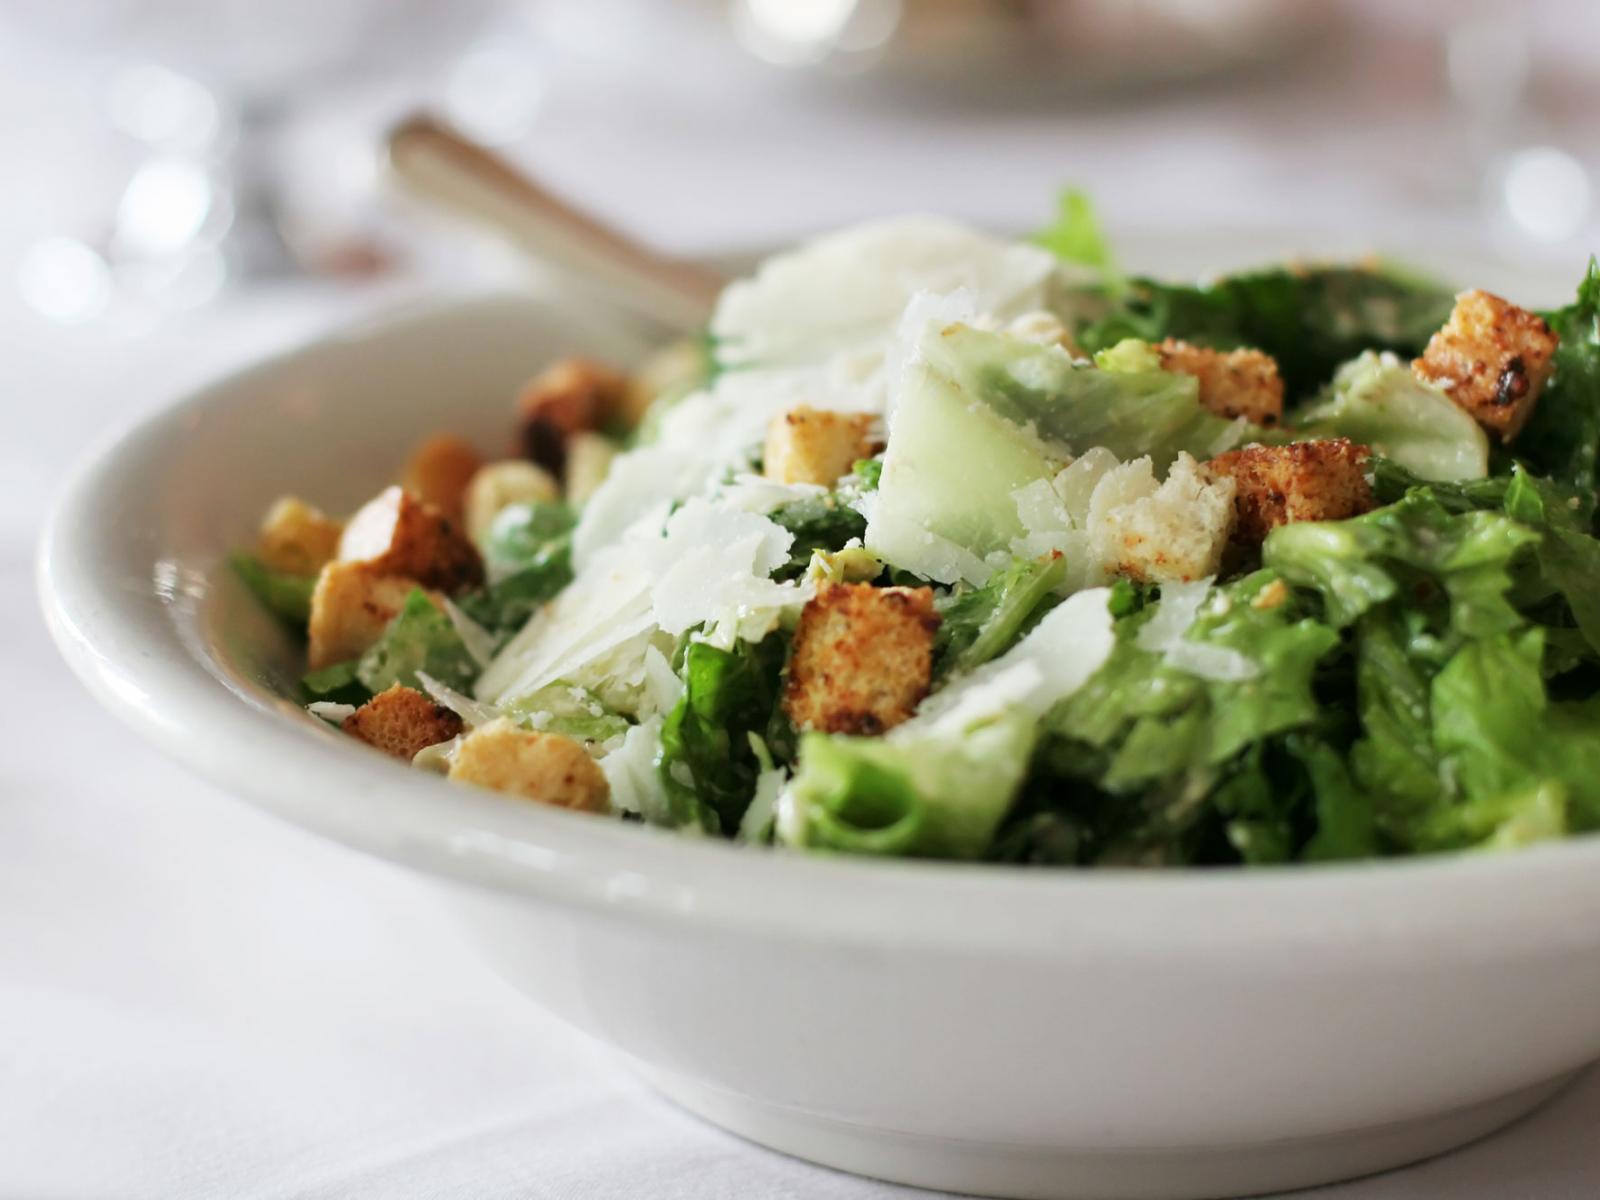 Creamy Caesar Salad Dressing - Sauce à salade césar crémeuse